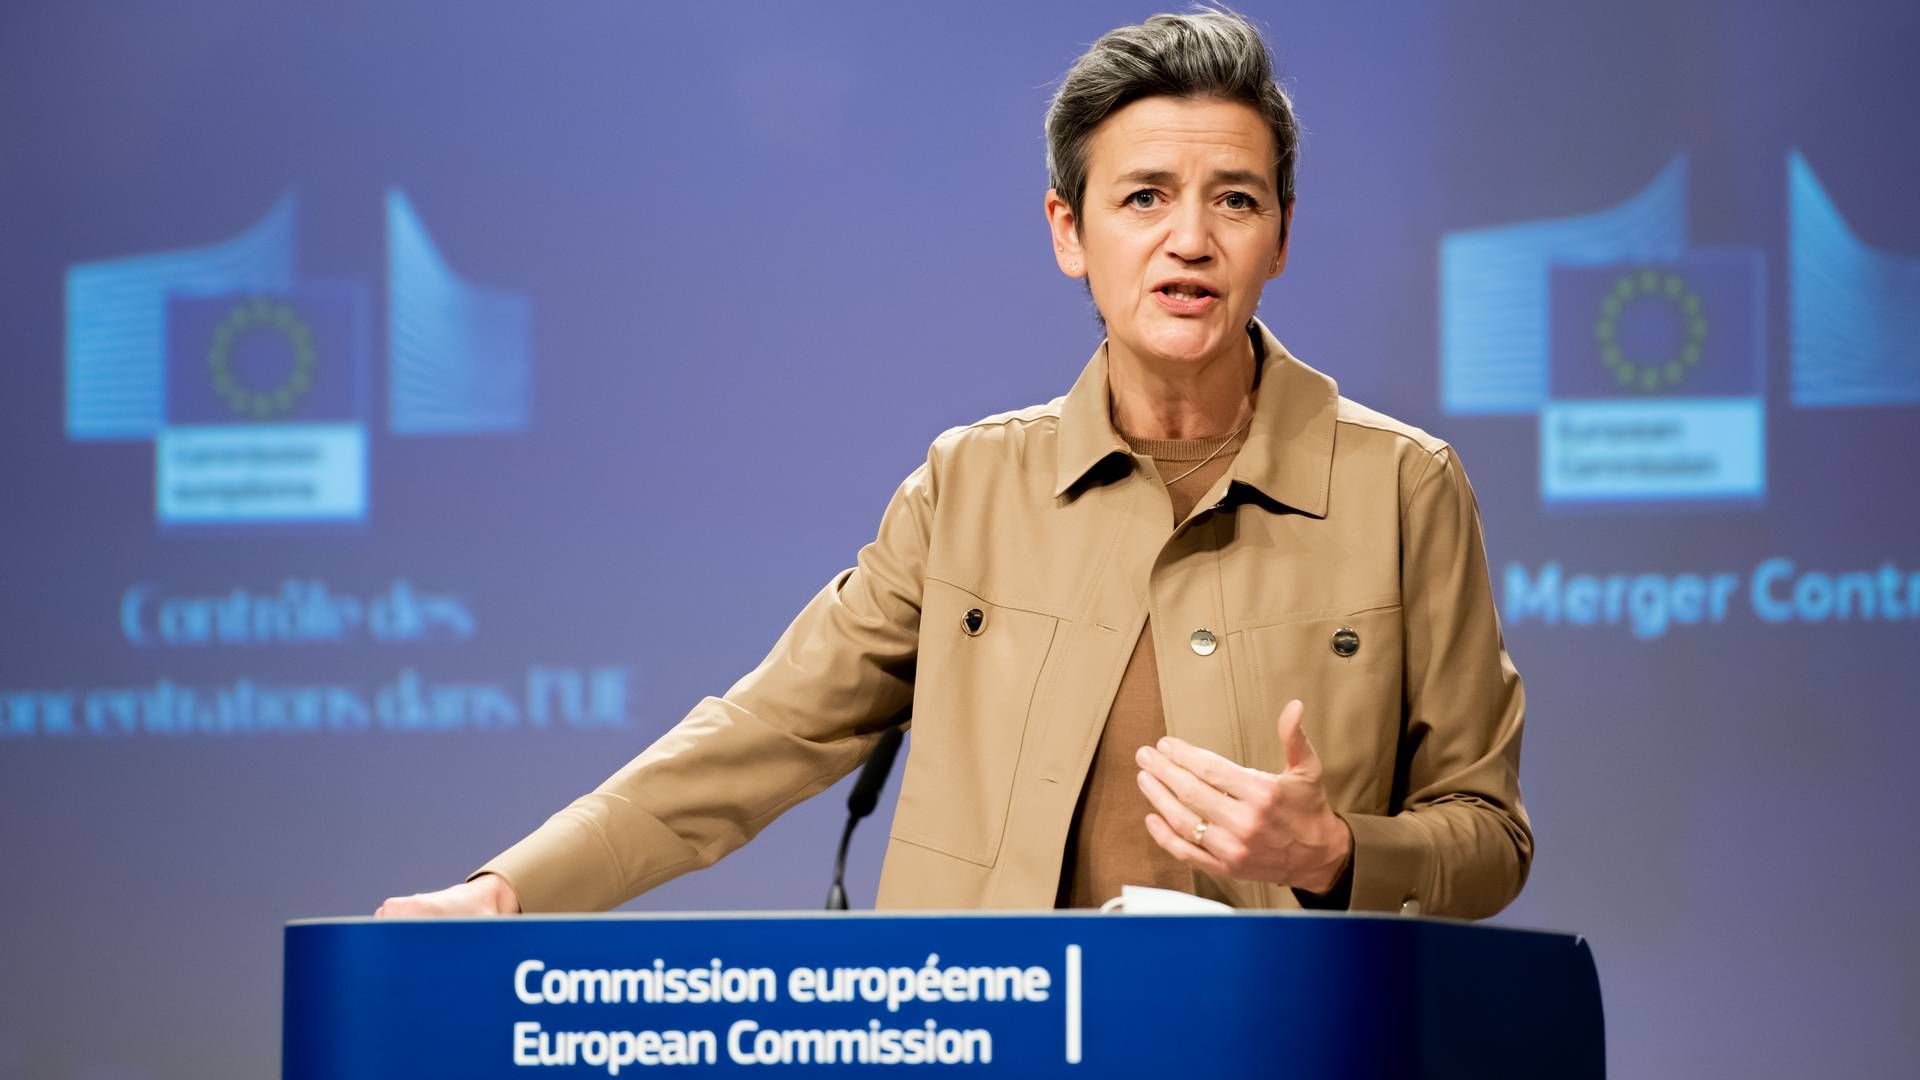 Danmarks EU-kommissær Margrethe Vestager har som ledende næstformand i Kommissionen ansvar for både konkurrence, digitalisering og tech-regulering. | Foto: Jennifer Jacquemart / European Unio